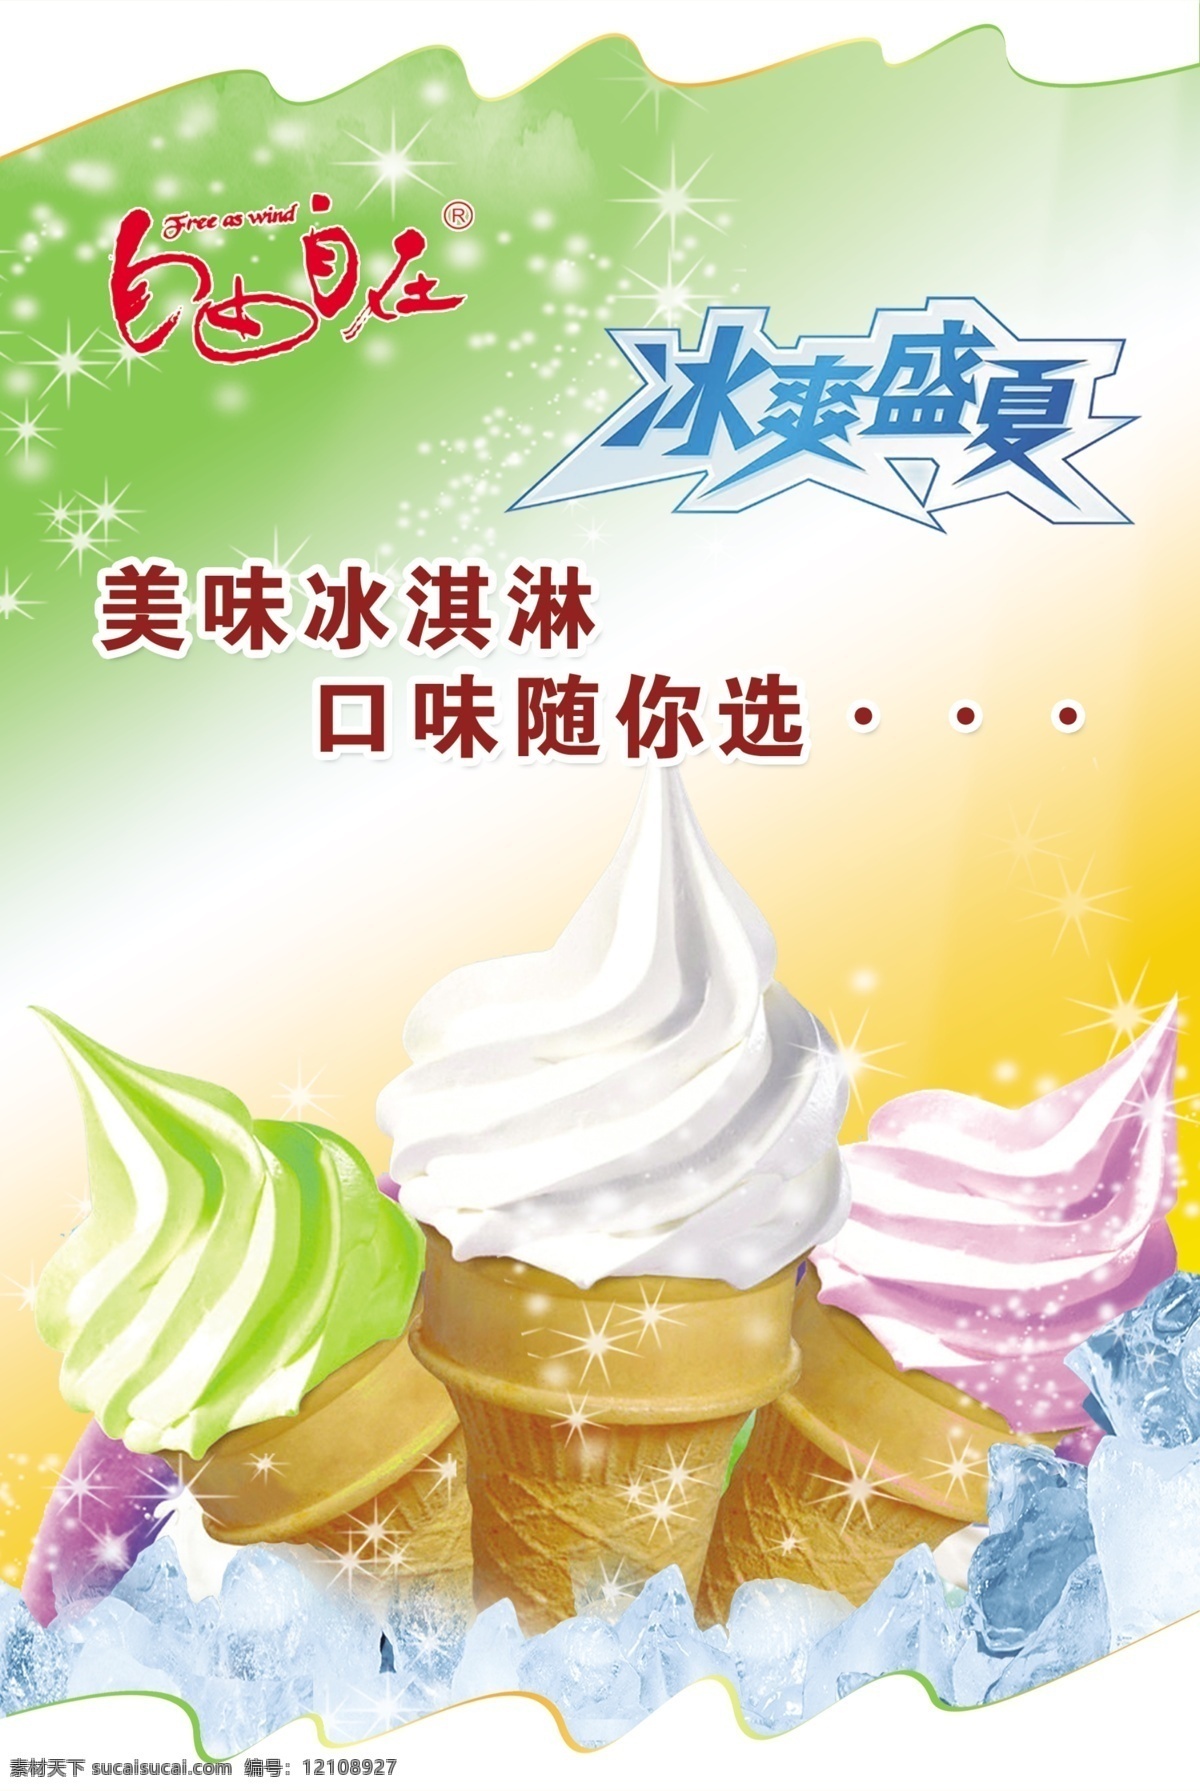 冰淇淋 广告 psd源文件 餐饮素材